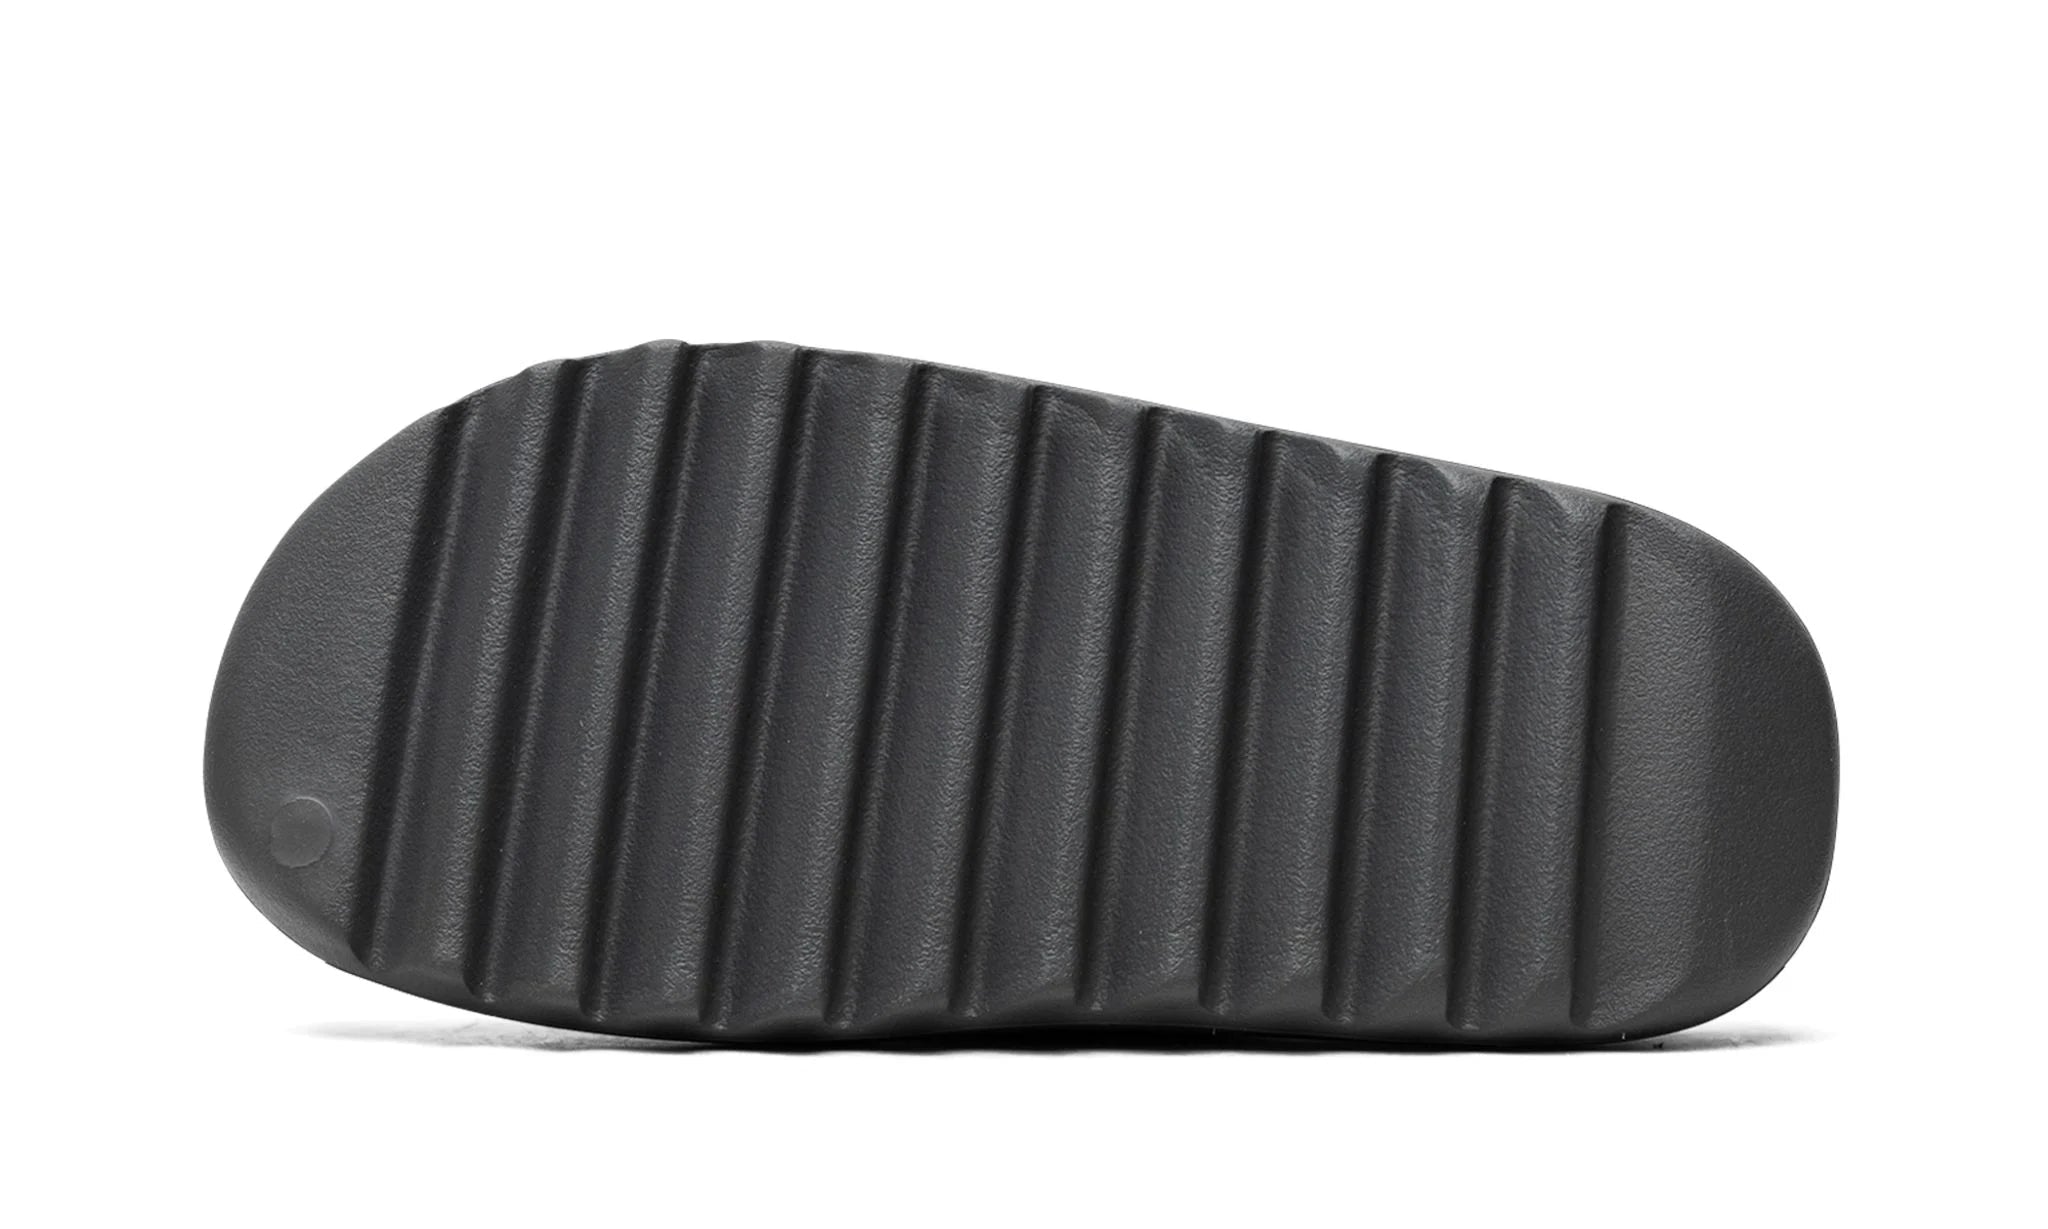 Adidas Yeezy Slide Slate Grey - Yeezy Slide - Pirri